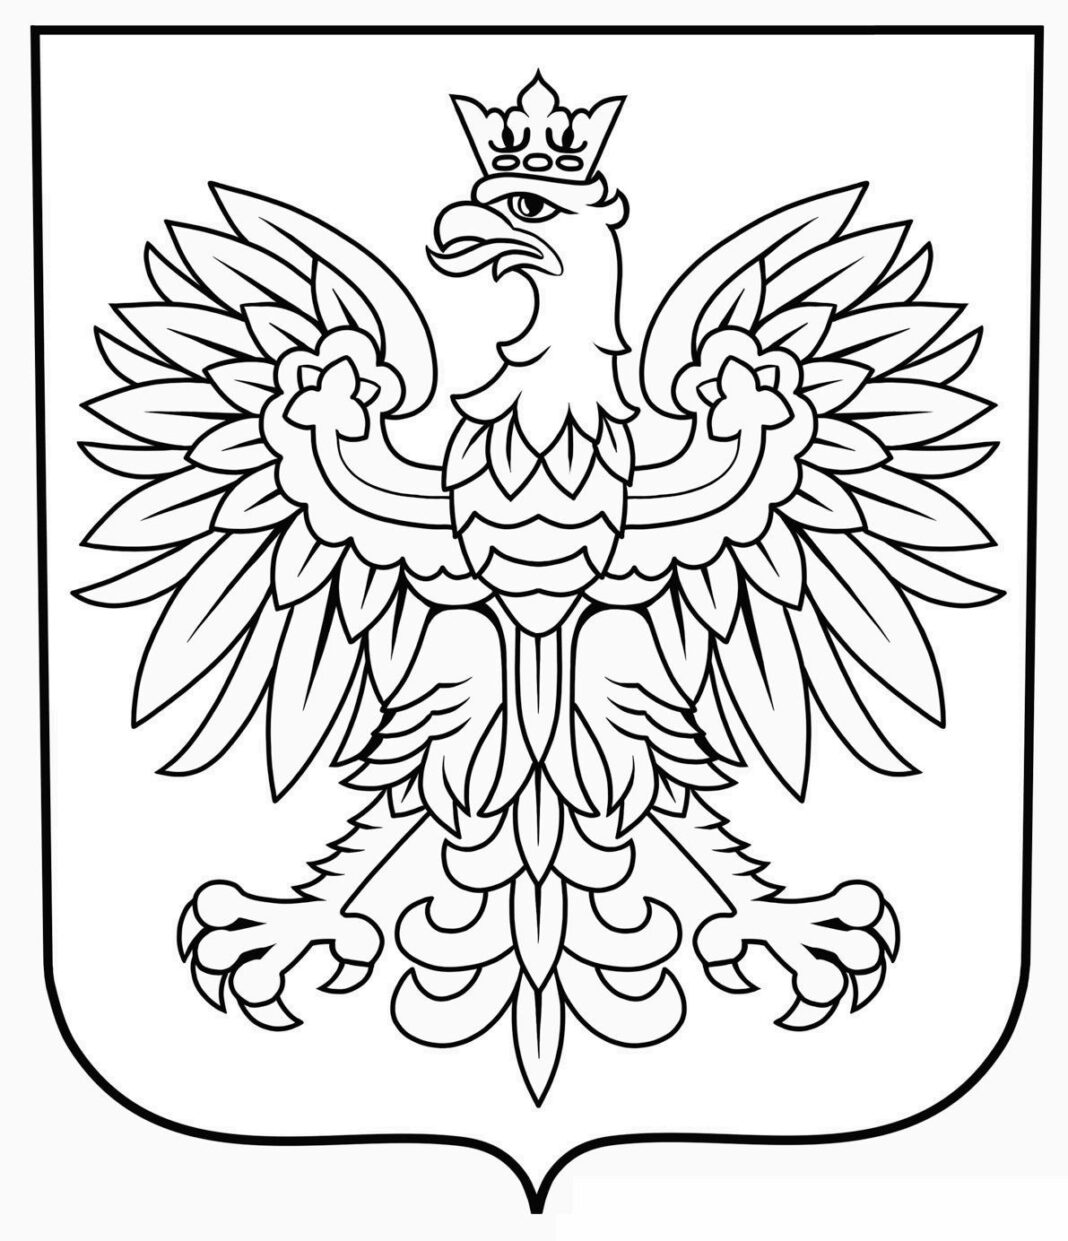 Adler polnisches Wappen Malbuch zum Ausdrucken